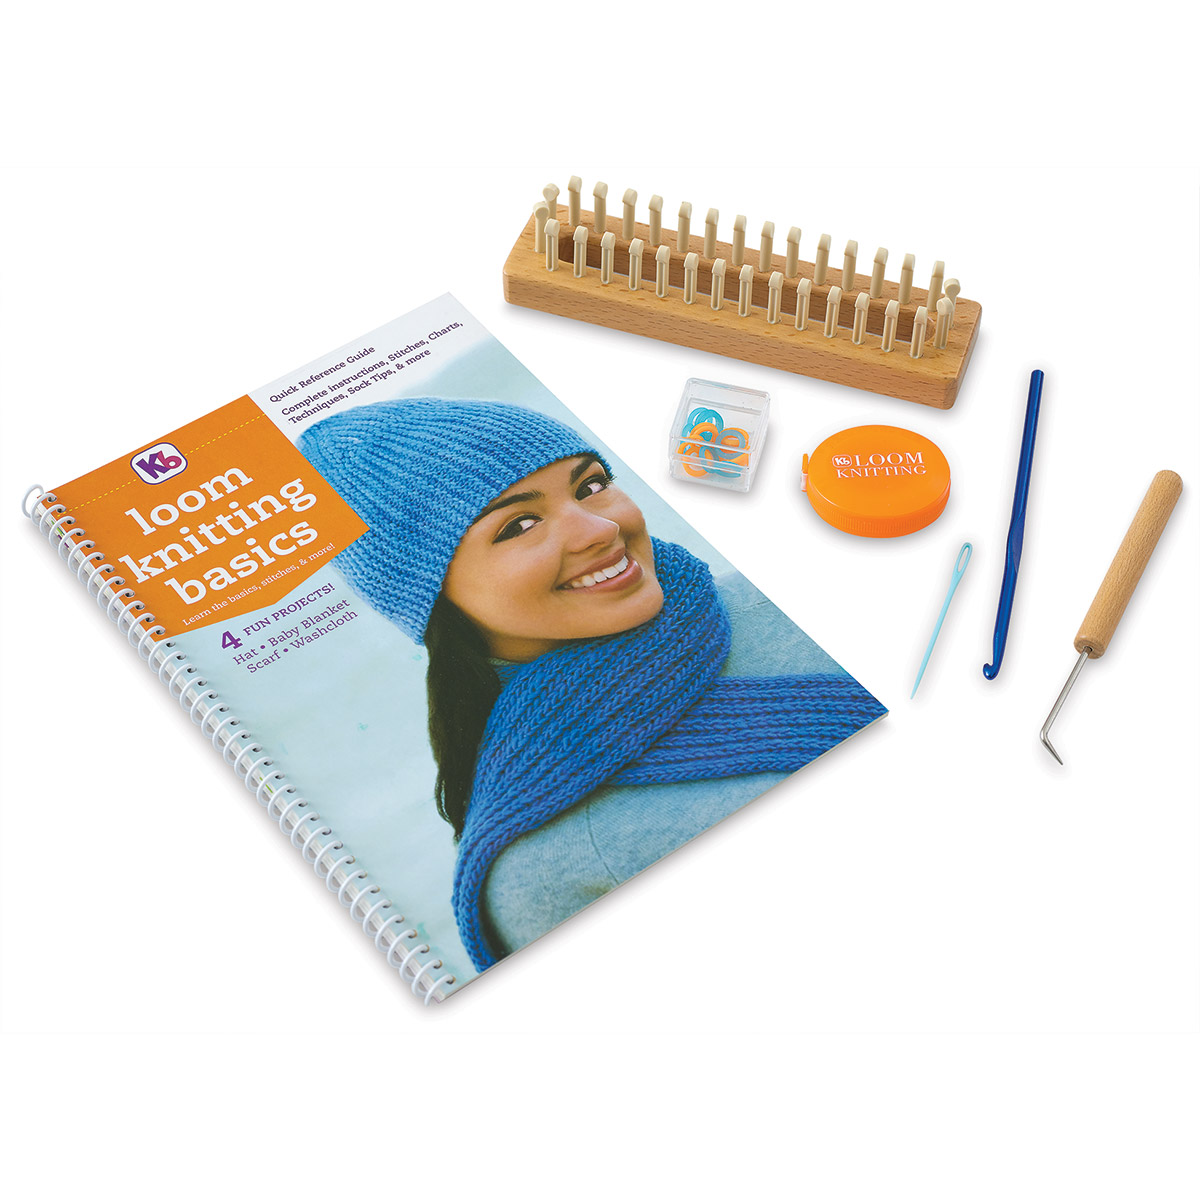 KB Loom Knitting Basics Kit